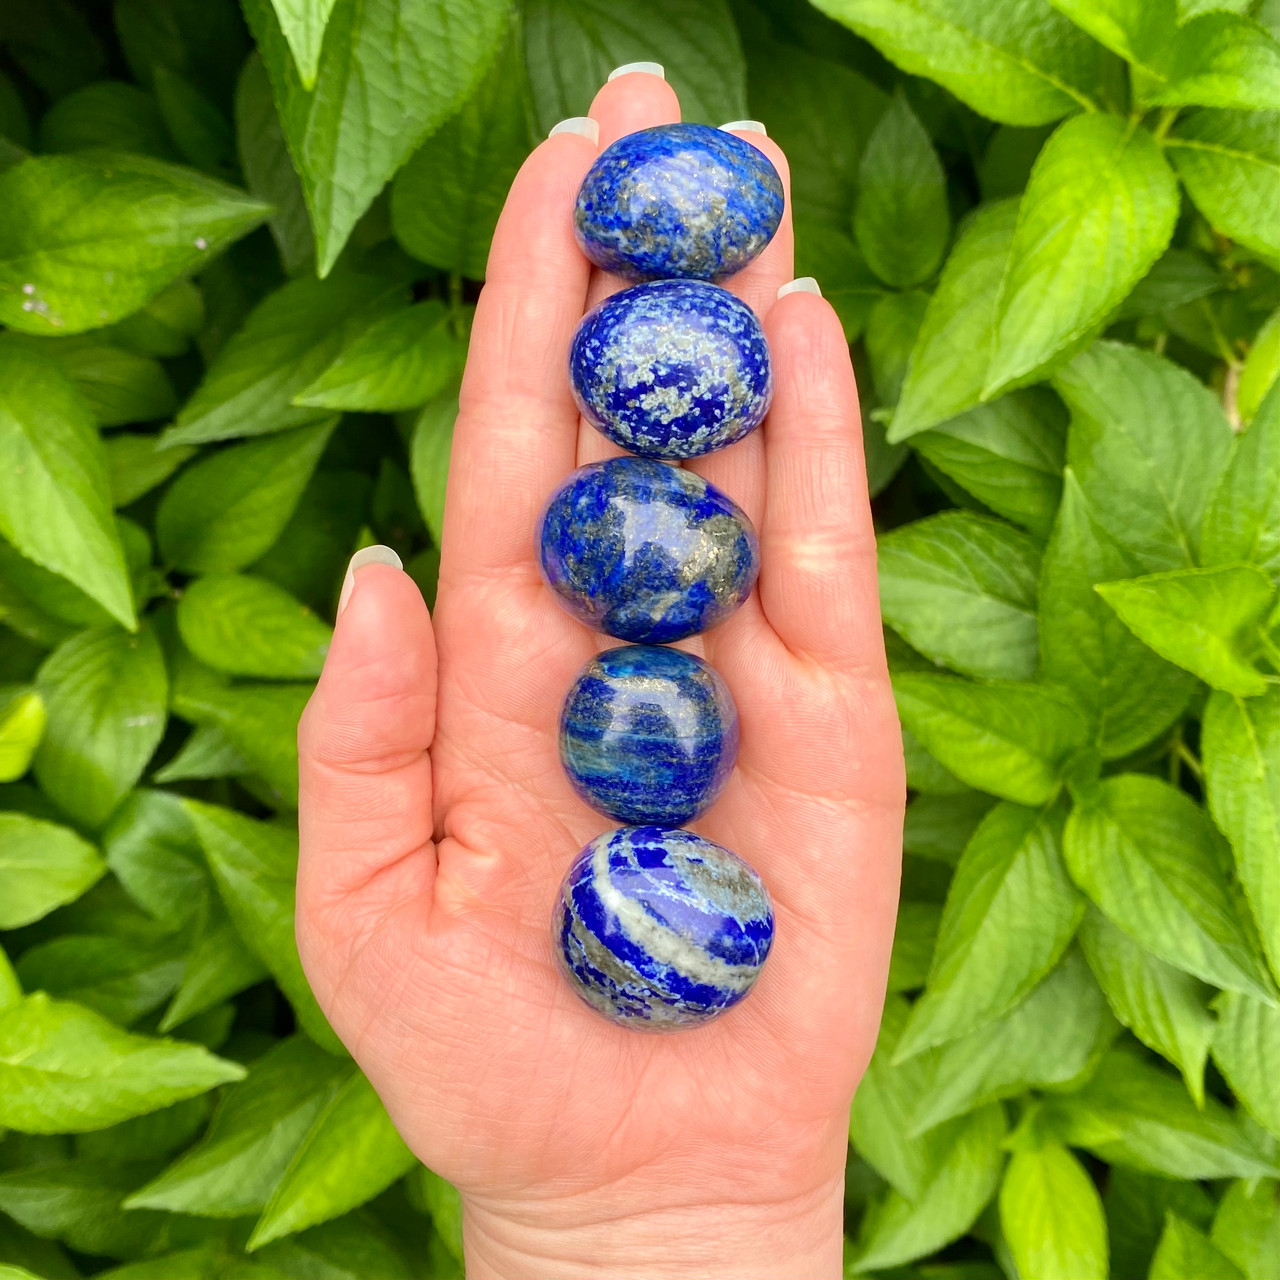 High Quality Lapis Lazuli Tumbled Stone- Large